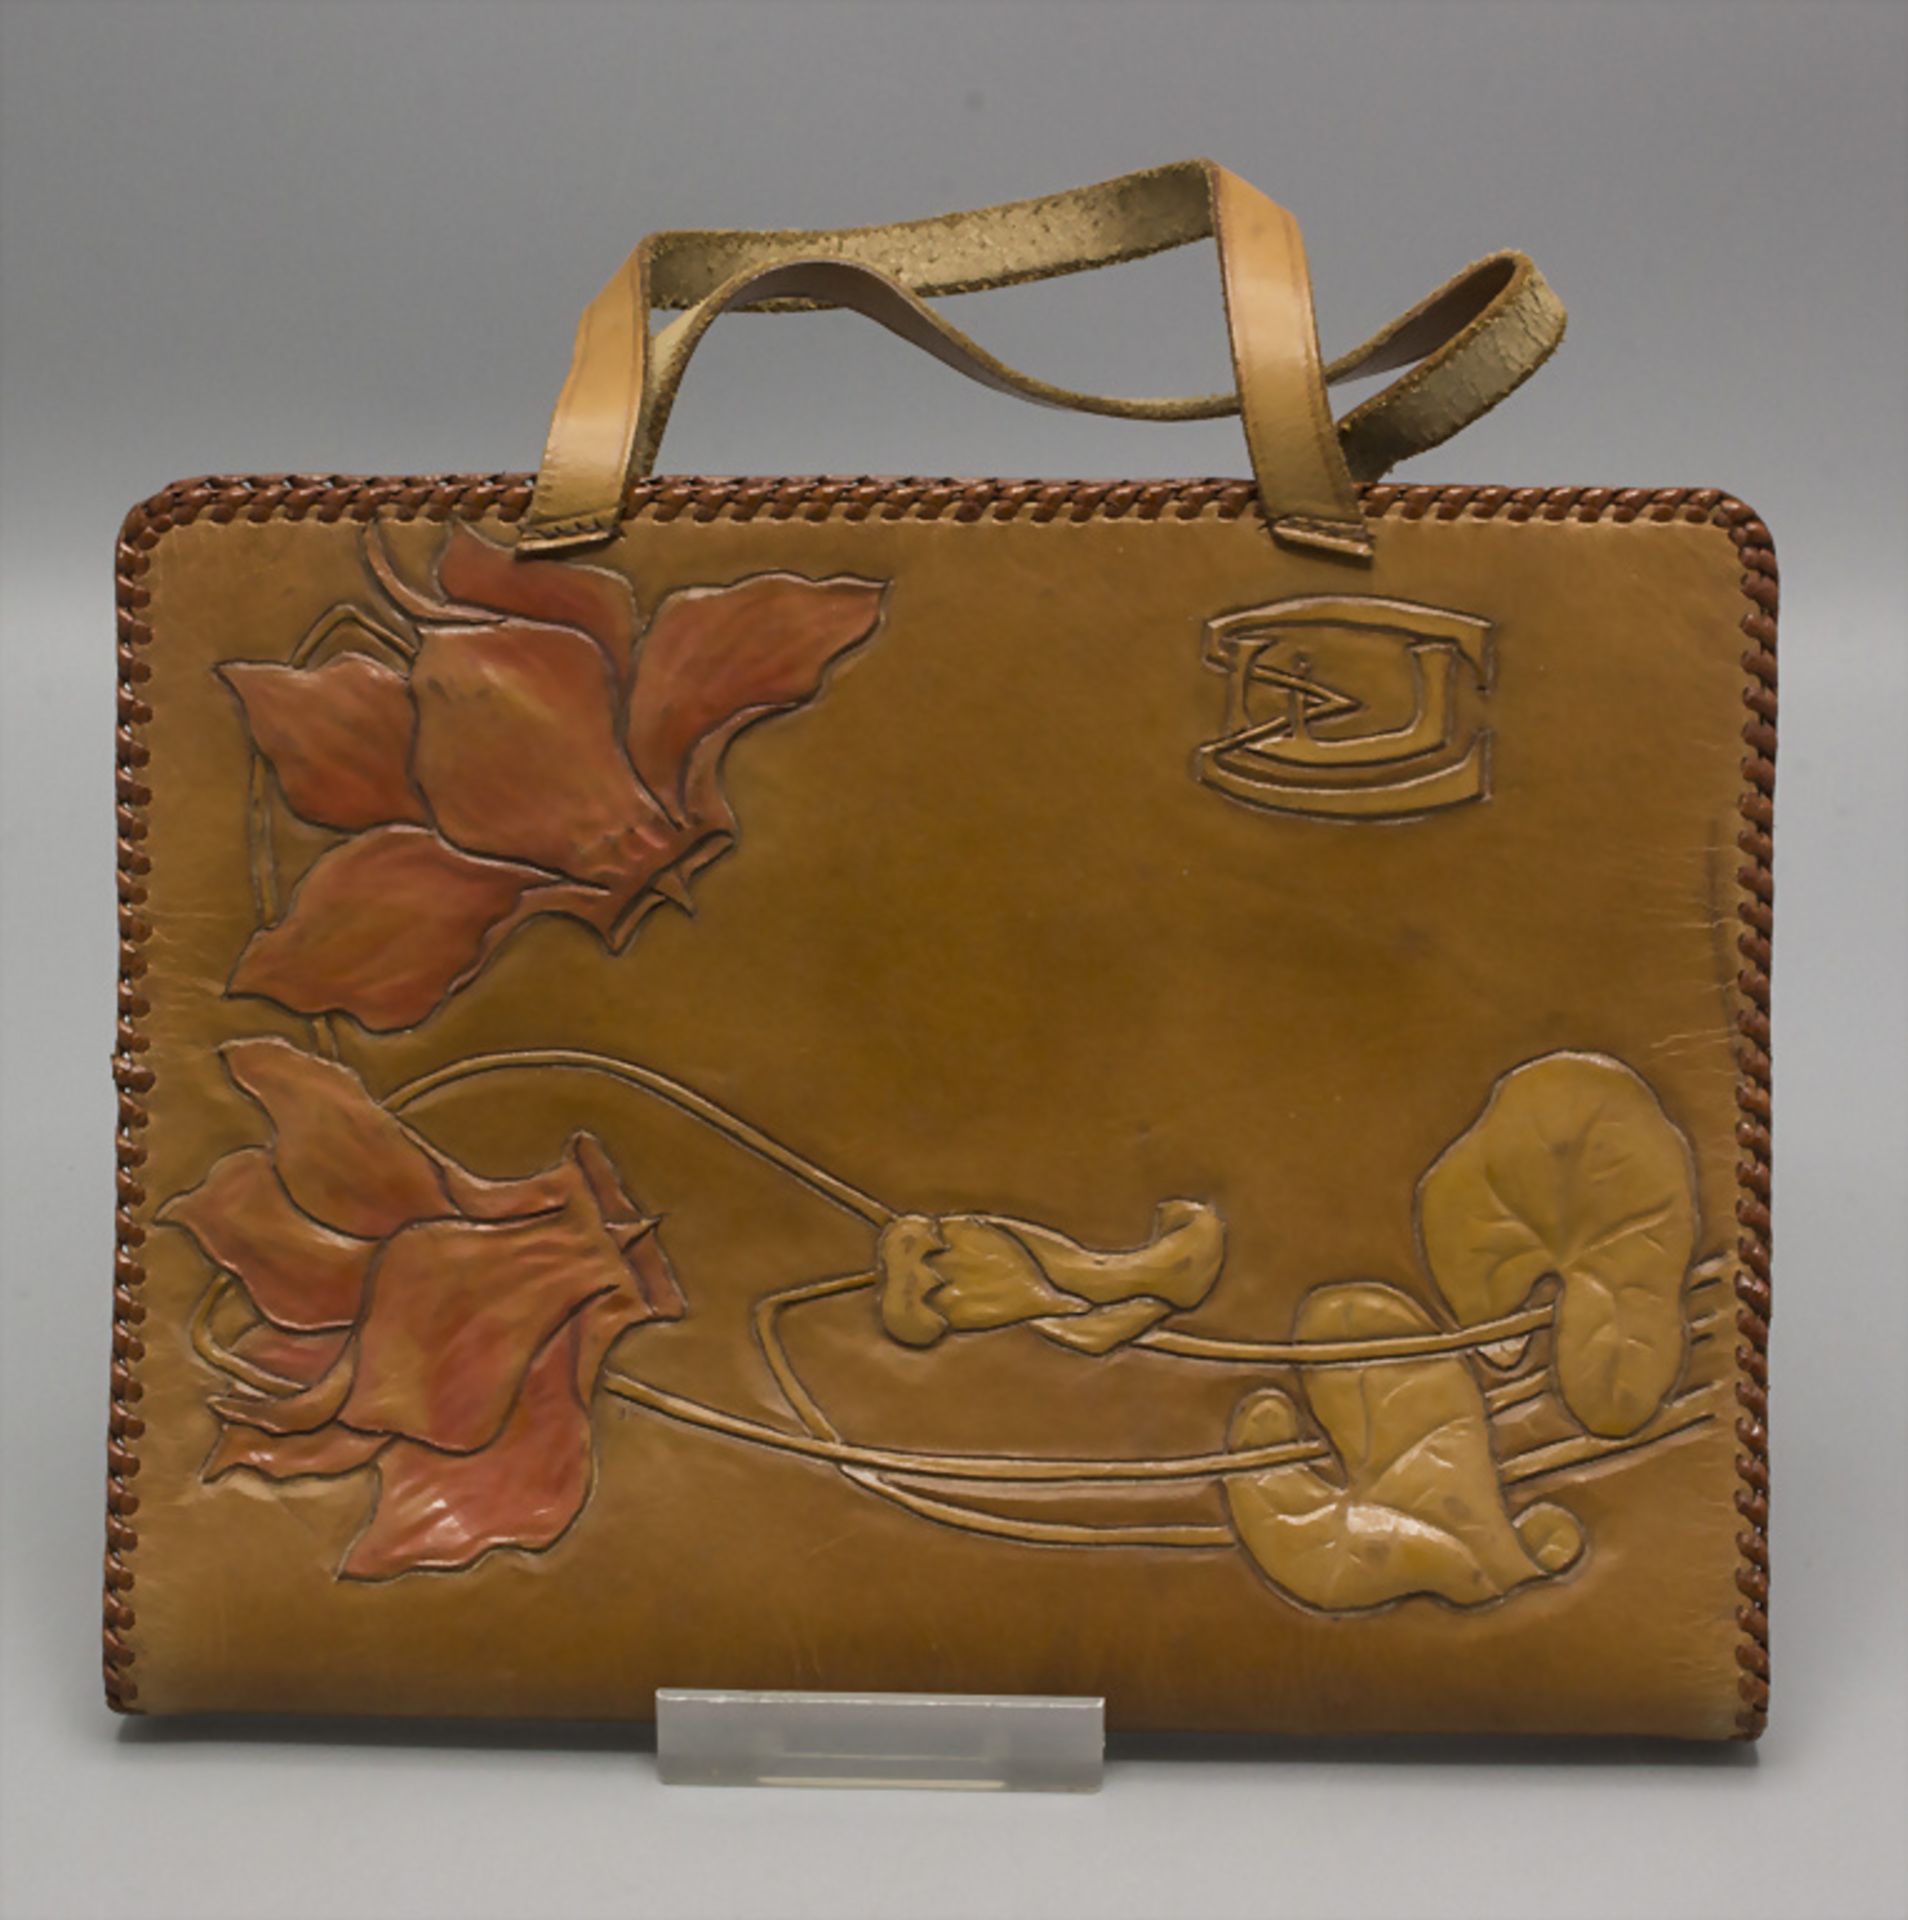 Monogrammiertes Jugendstil Lederetui mit Seerosendekor / A monogrammed Art Nouveau leather ...